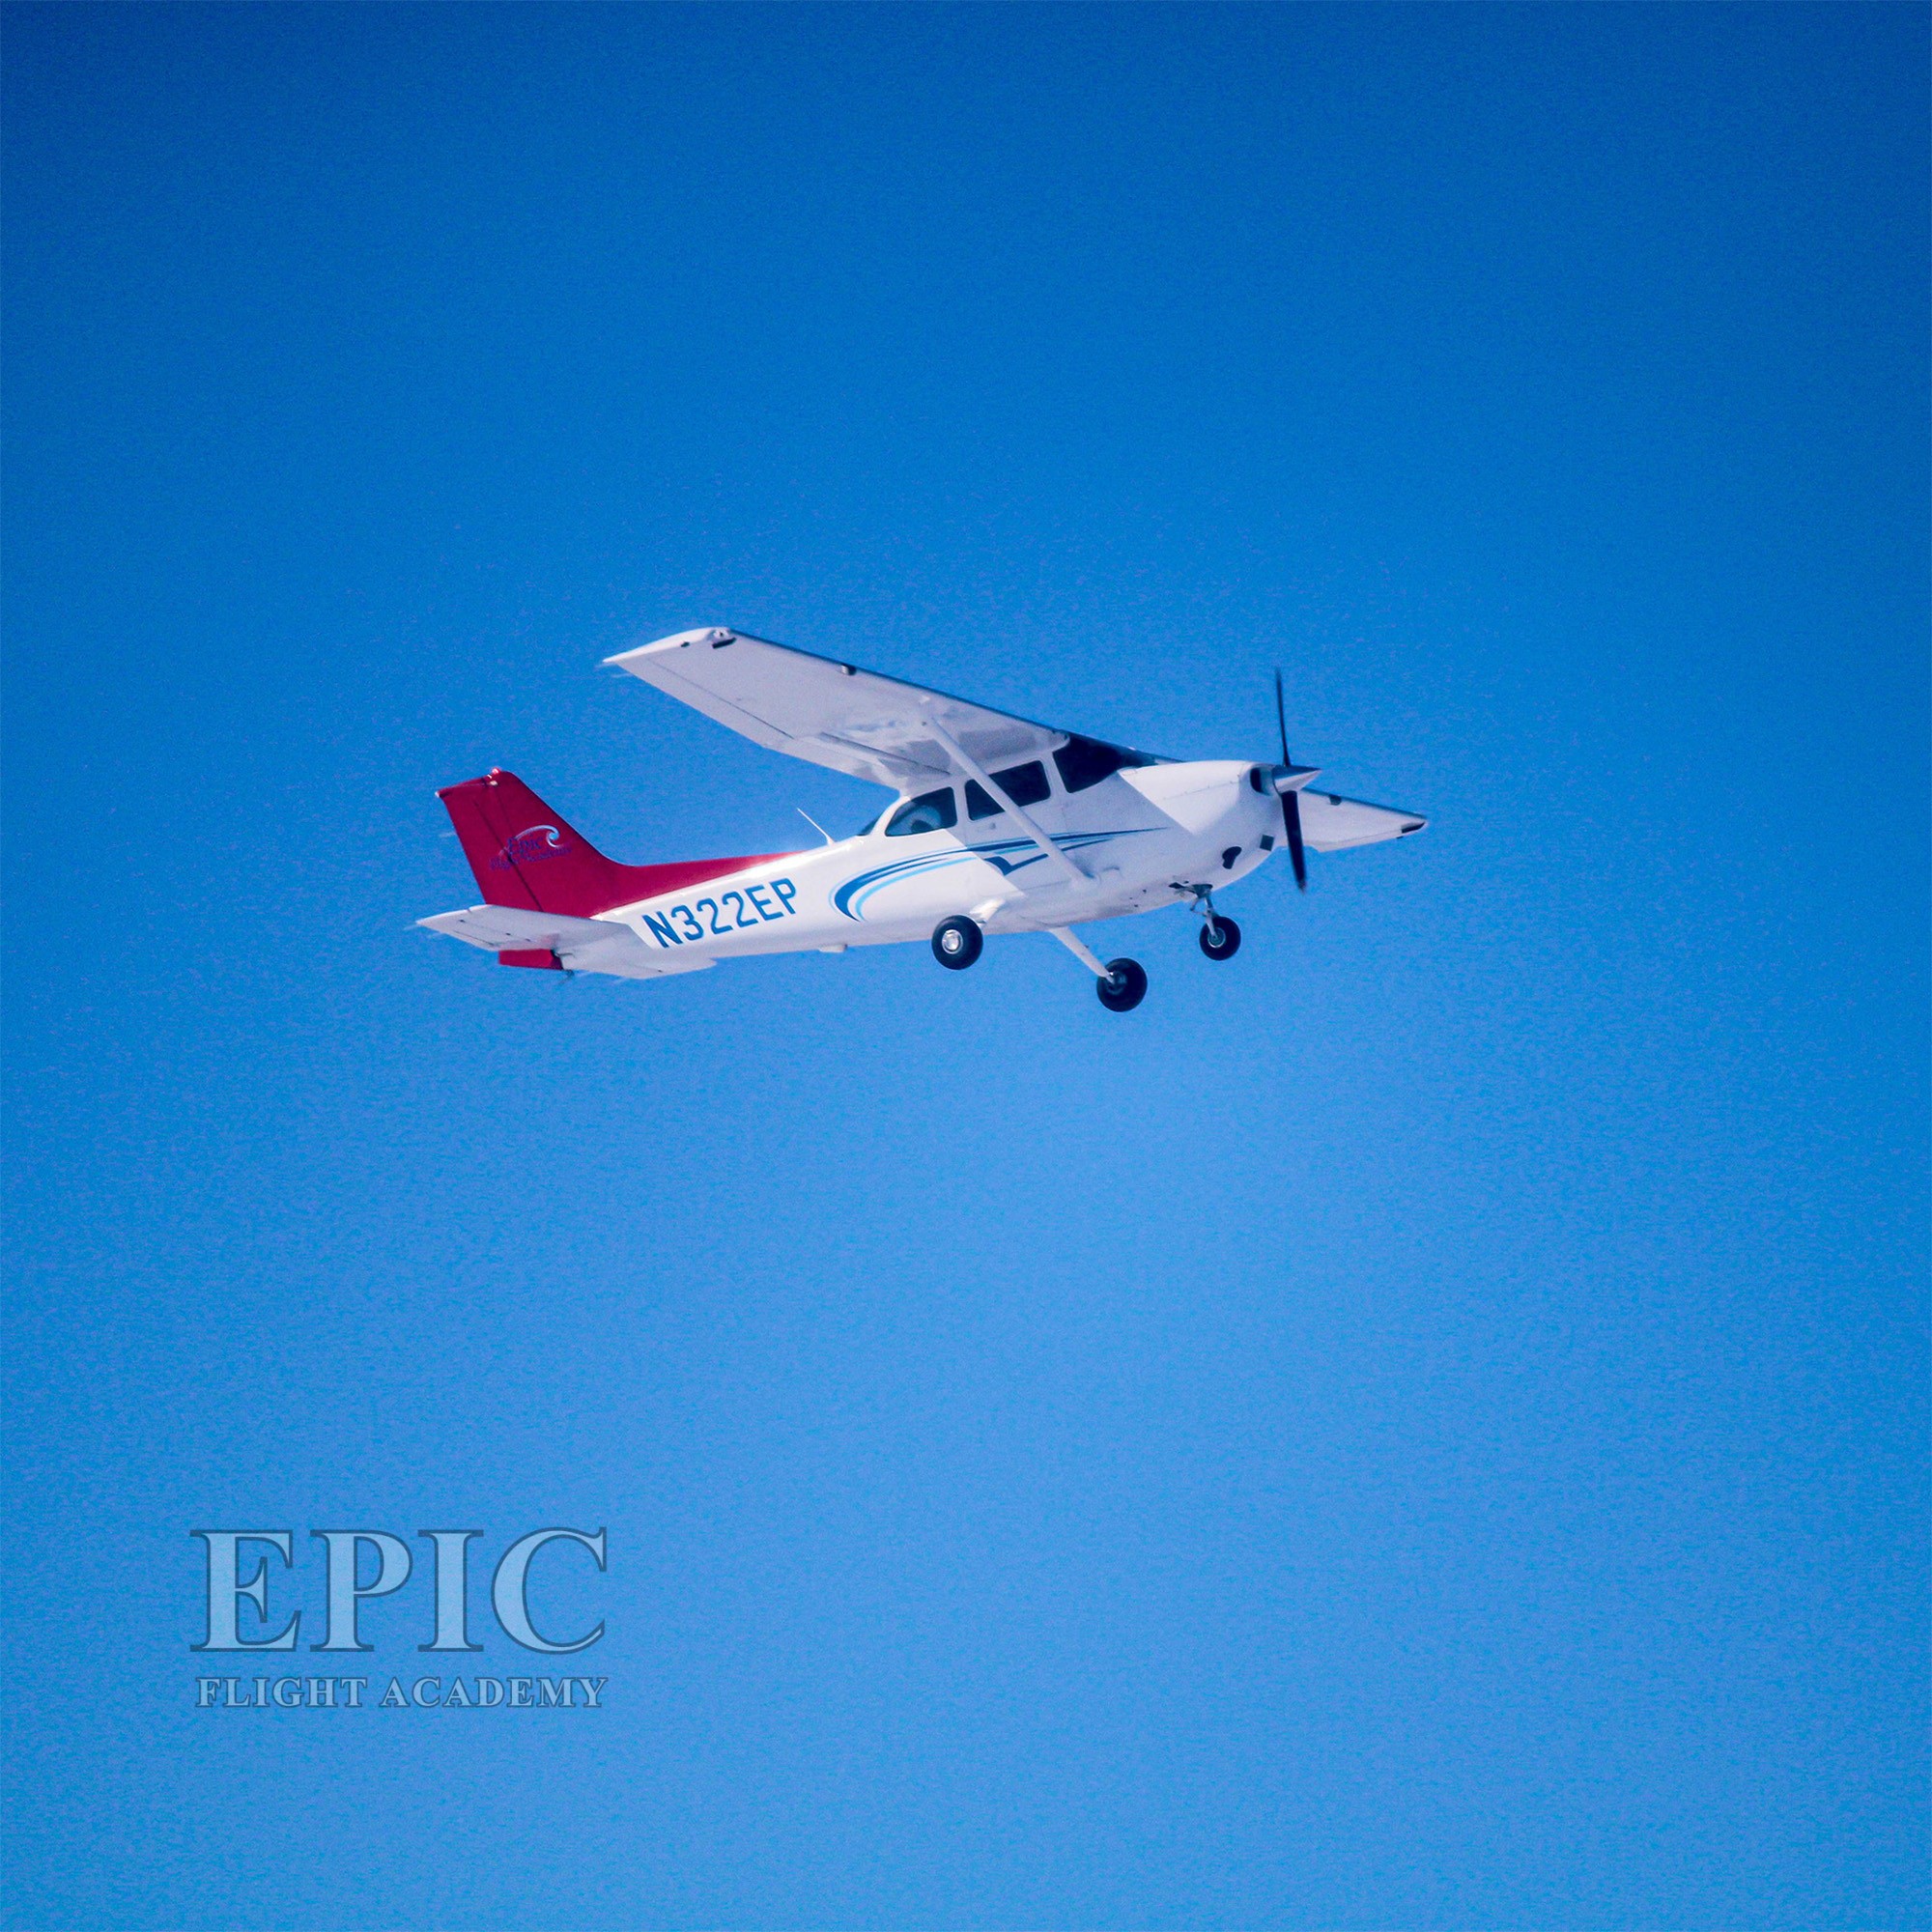 New Epic fleet, Cessna 172 Skyhawk